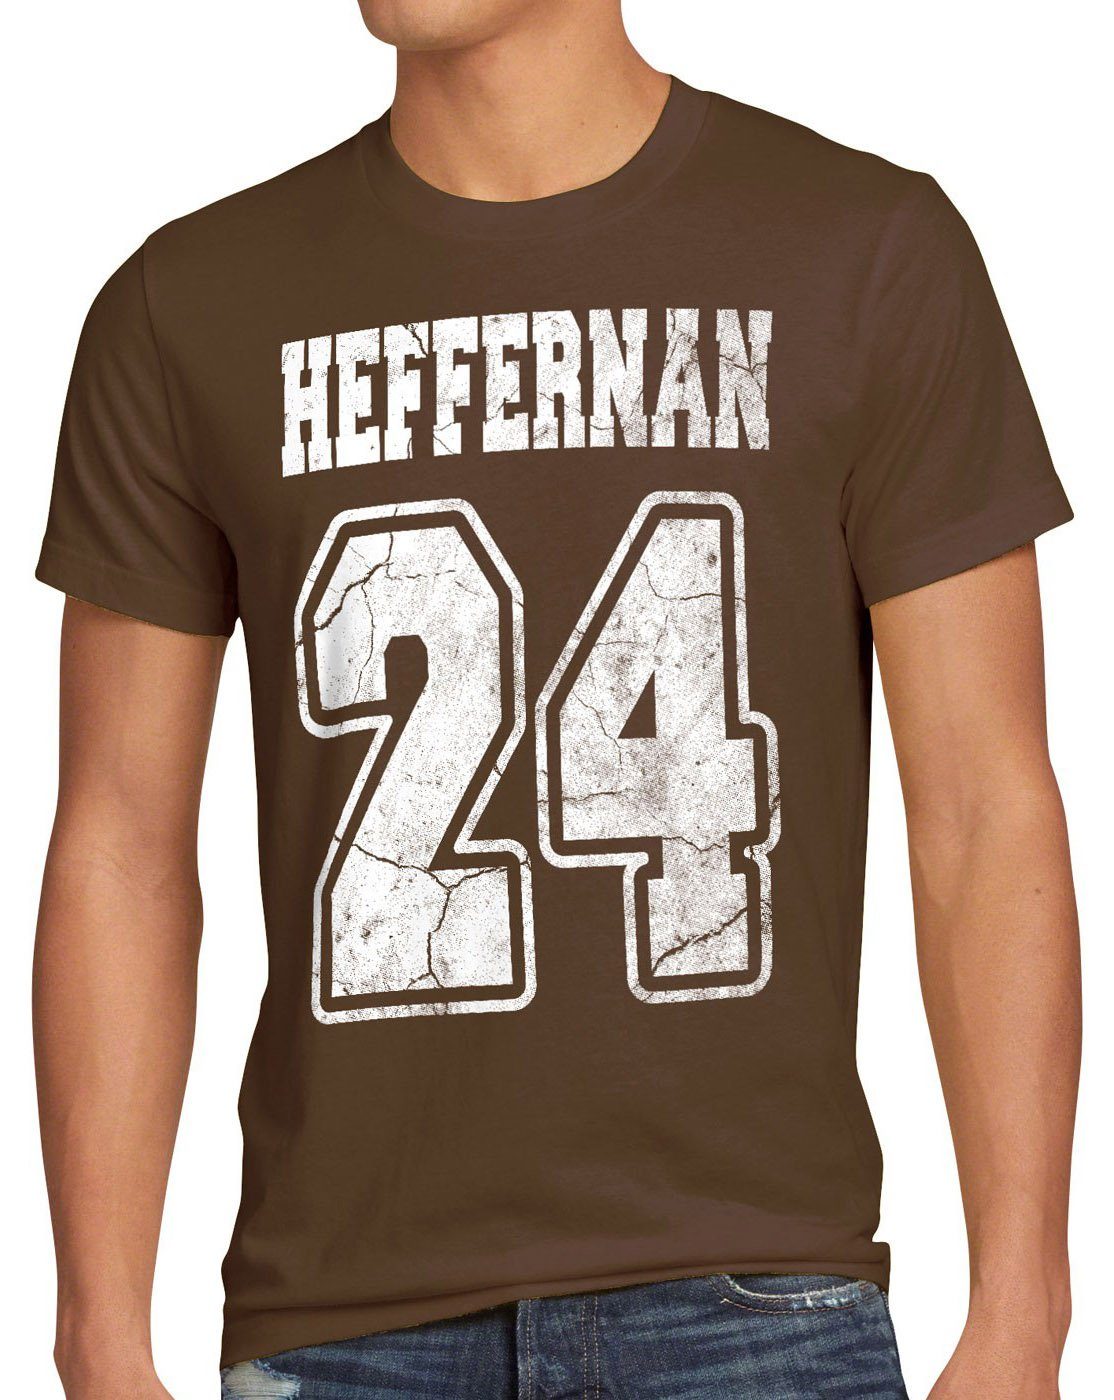 T-Shirt Herren coopers Heffernan spooner doug 24 of sitcom braun Print-Shirt style3 queens IPS the king